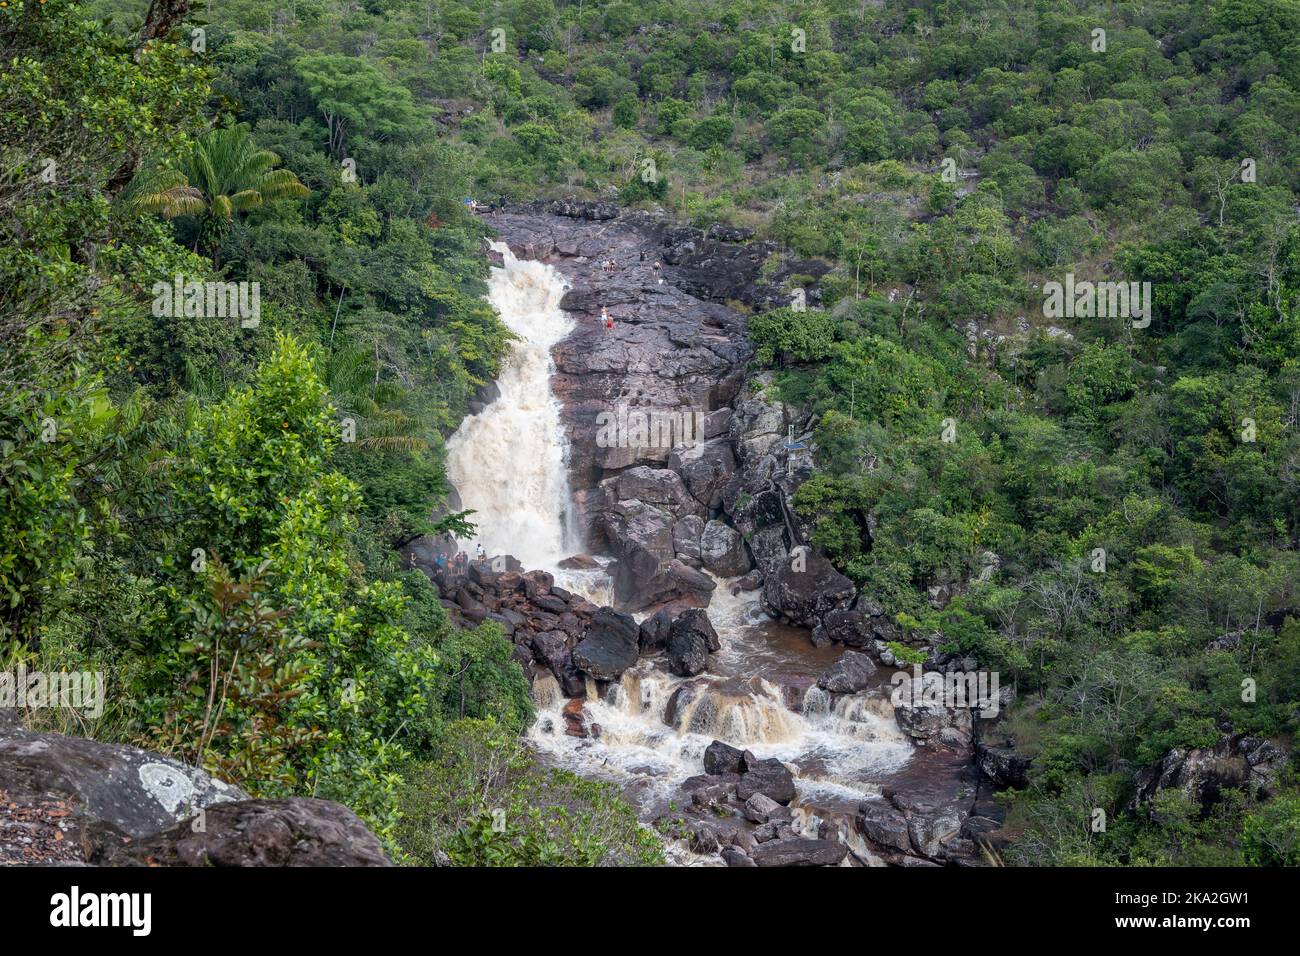 Wasserfall inmitten eines dichten tropischen Waldes. Tepequém, Bundesstaat Roraima, Brasilien. Stockfoto